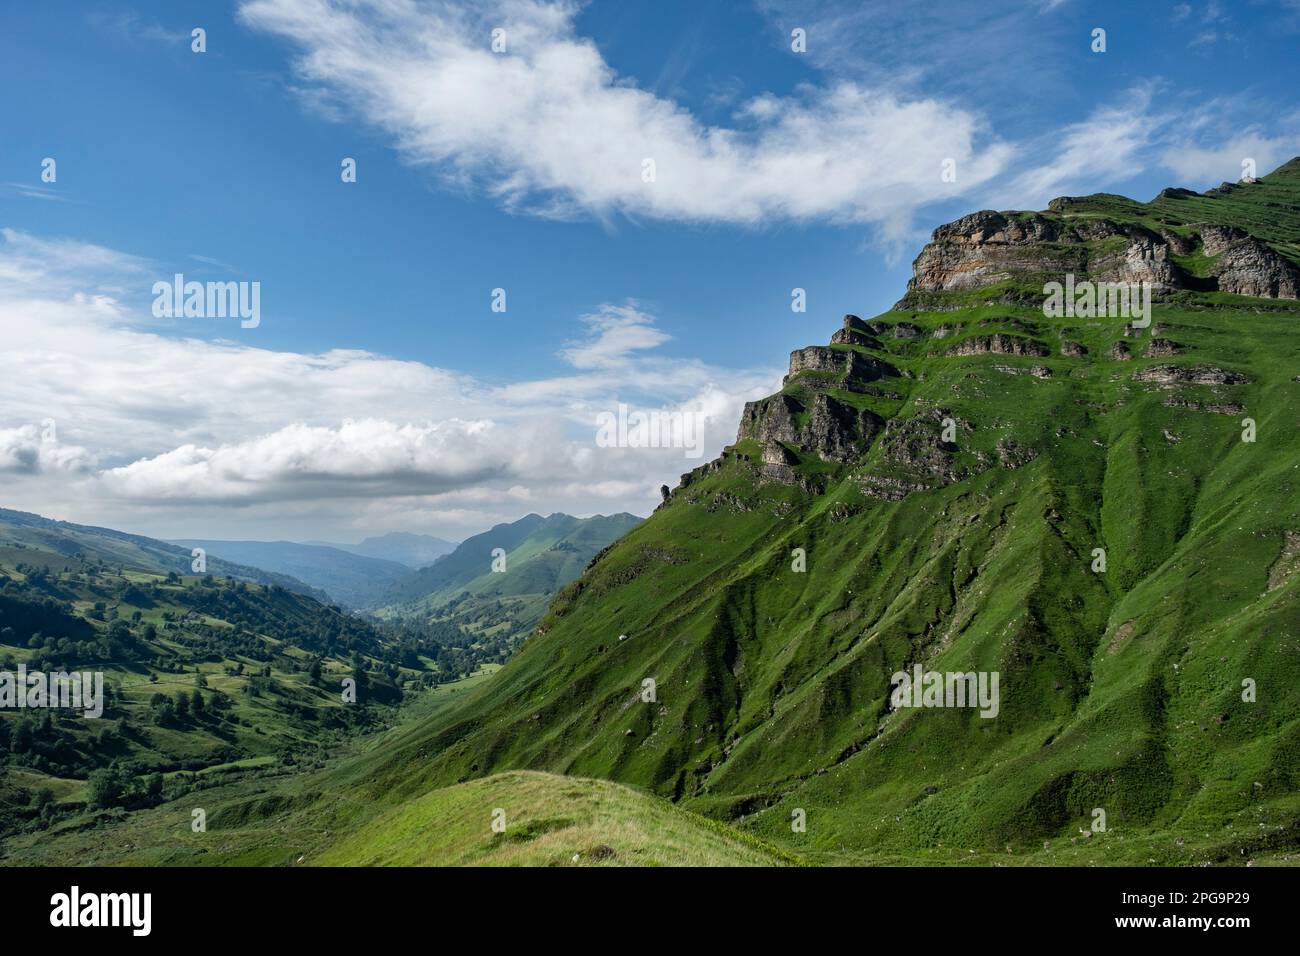 Belle vue sur la vallée verdoyante dans les montagnes de Cantabrie, Espagne Banque D'Images